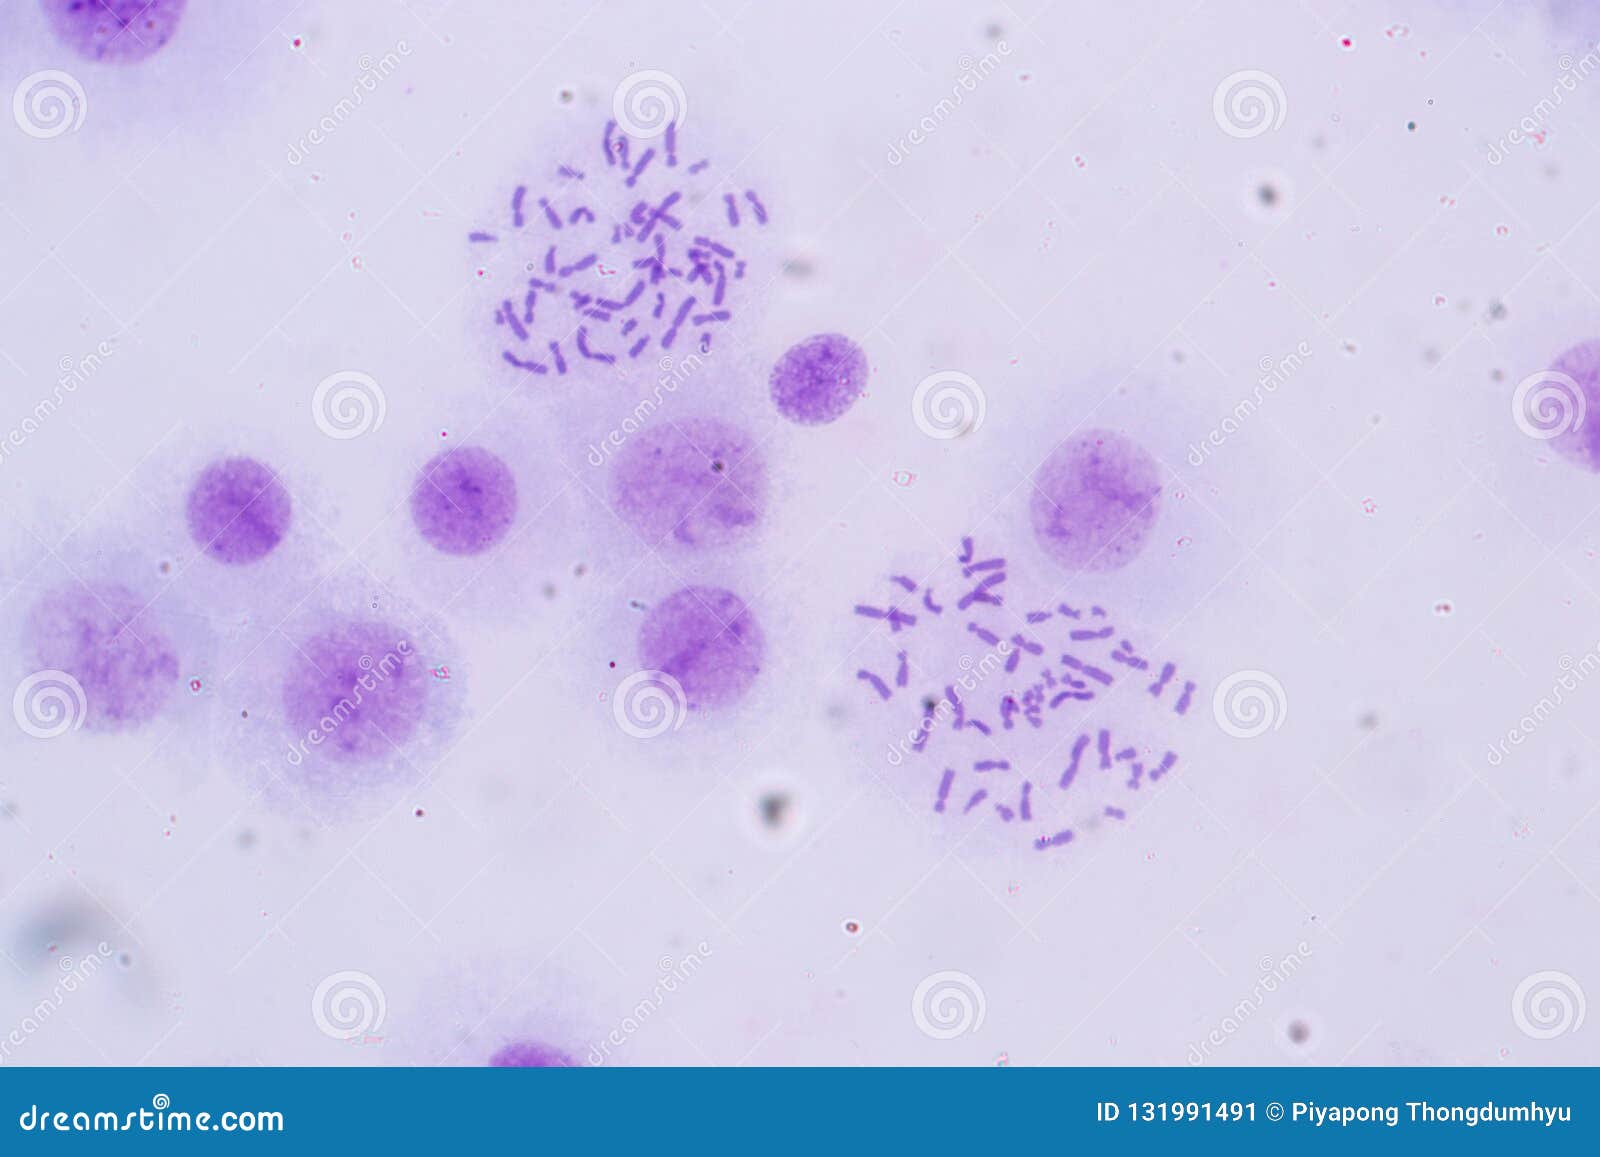 Cromosomas Humanos Debajo Del Para La Educación Imagen de archivo - Imagen de molecular, microscopio: 131991491